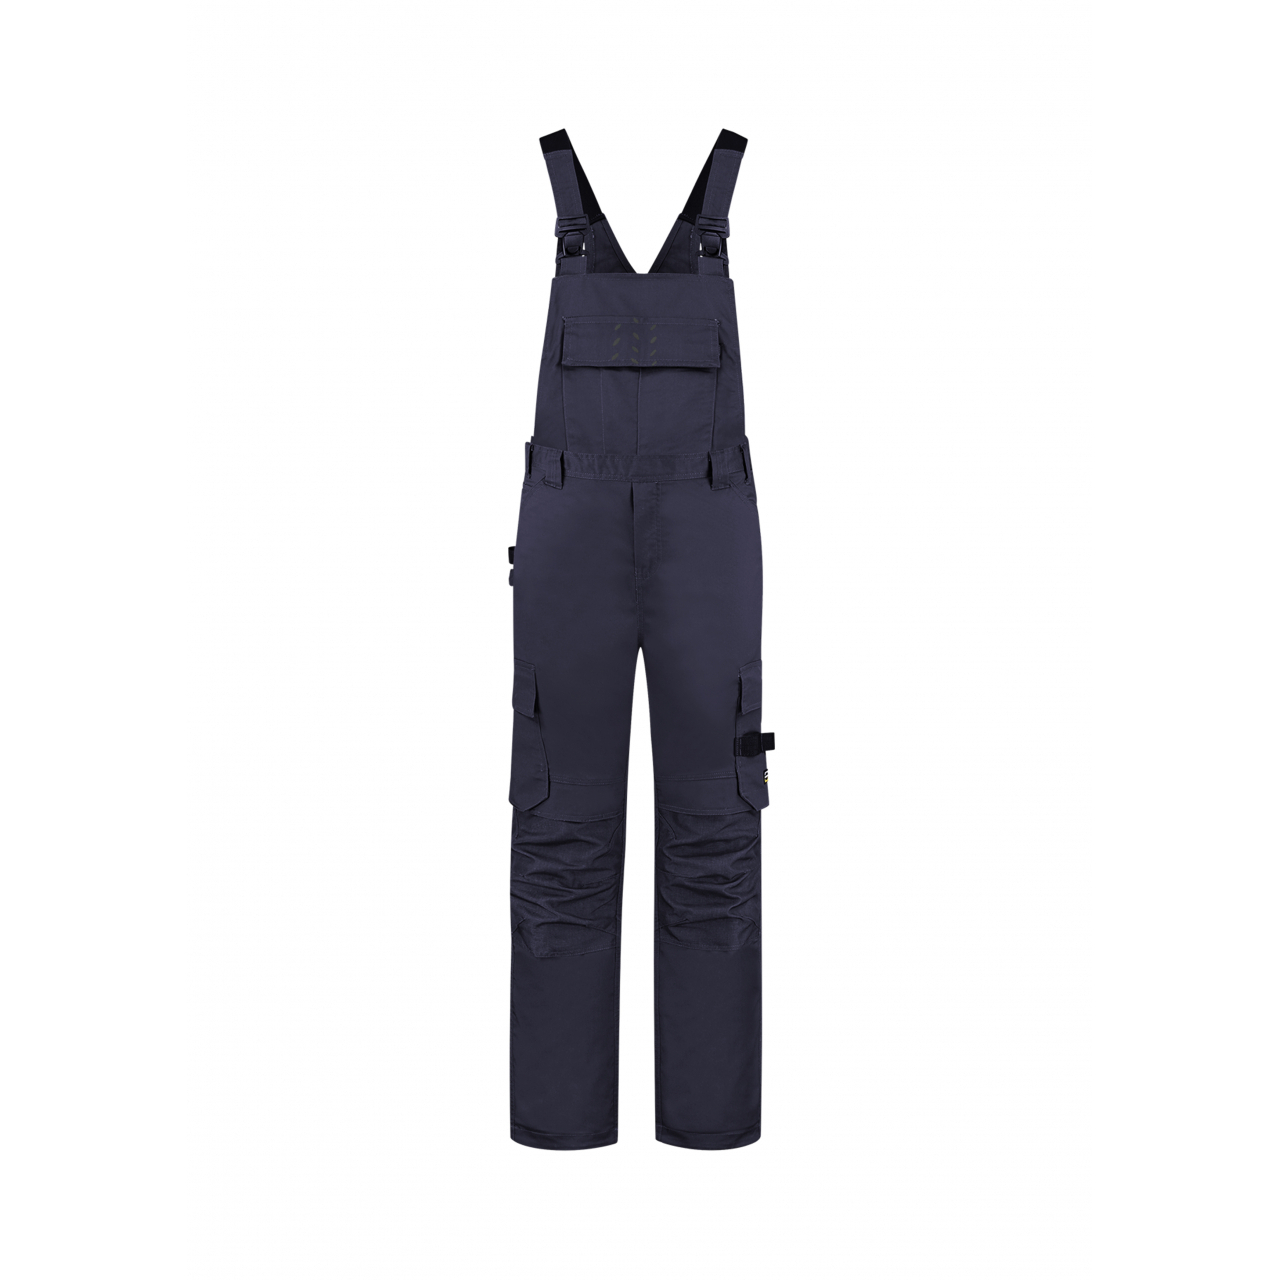 Pracovní kalhoty laclové Tricorp Bib&Brace Twill Cordura - tmavě modré, 48